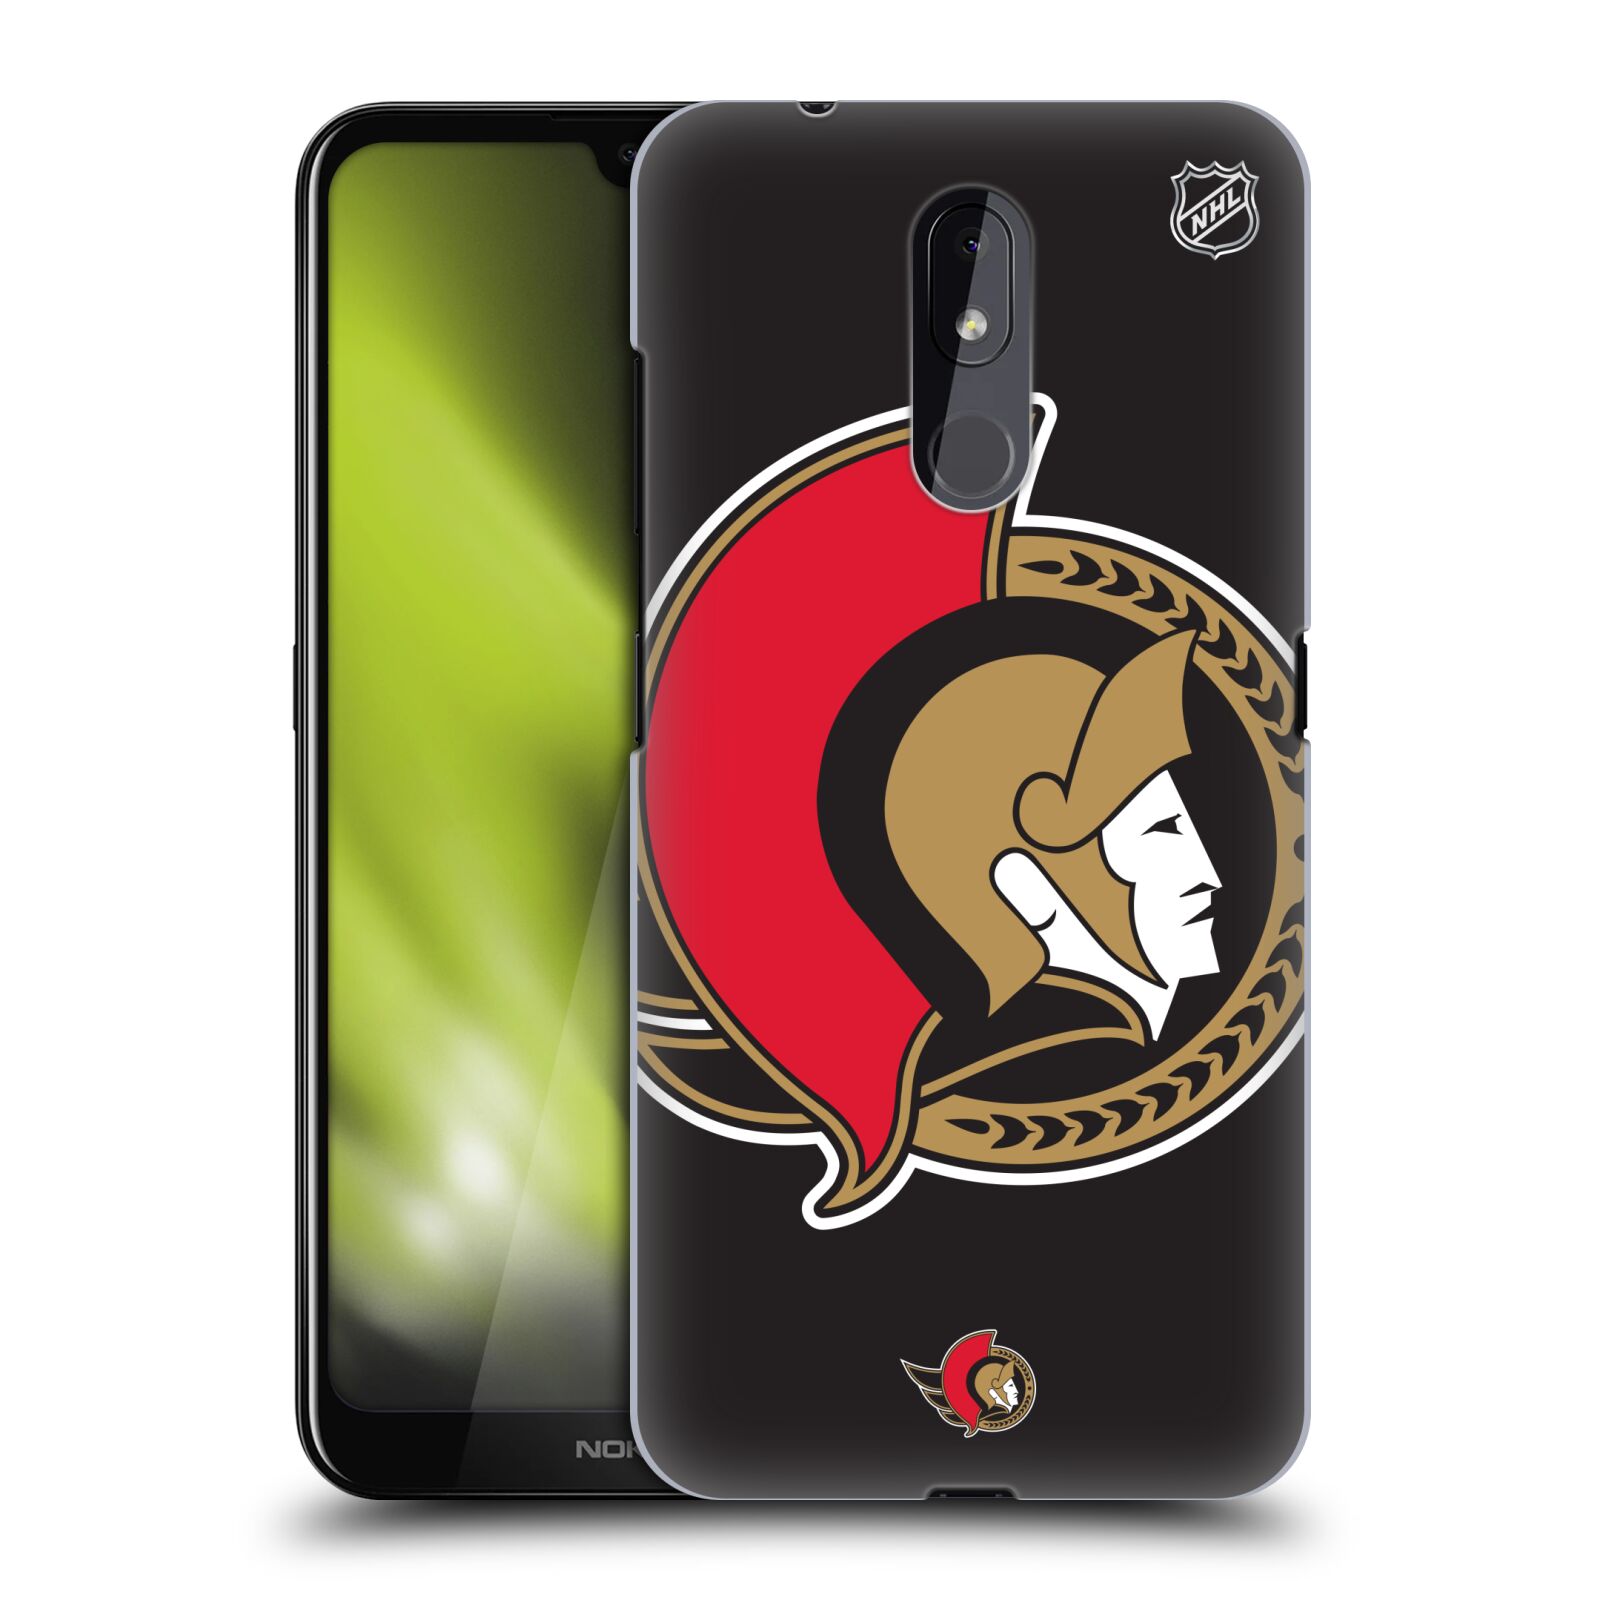 Pouzdro na mobil Nokia 3.2 - HEAD CASE - Hokej NHL - Ottawa Senators - Velký znak